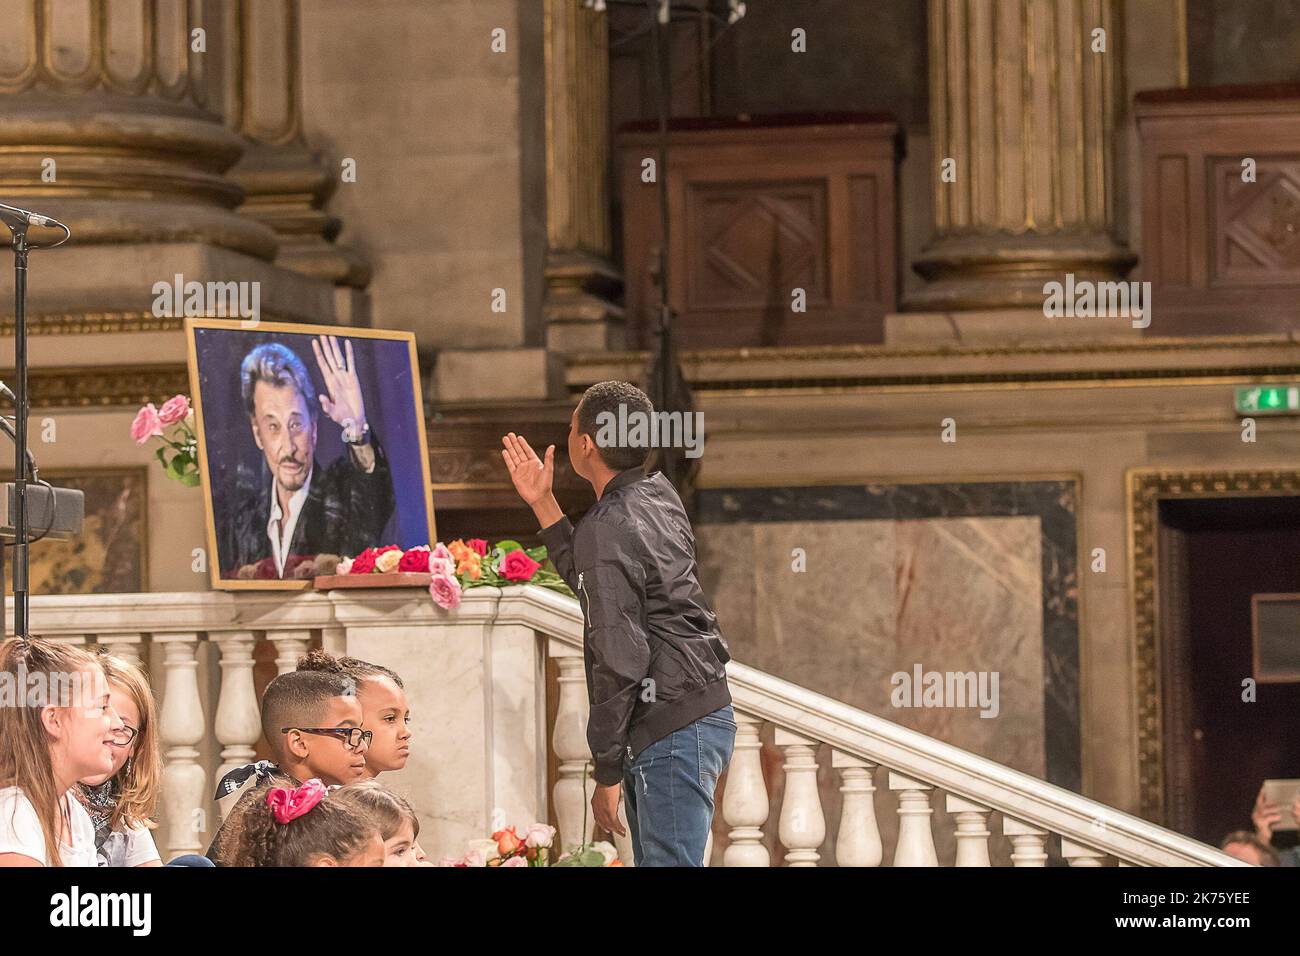 Etwa 6 Monate nach dem tod des französischen Rockstars Johnny Hallyday feiern 3 000 Menschen seinen 75.. Geburtstag in der Kirche von Madeleine Stockfoto